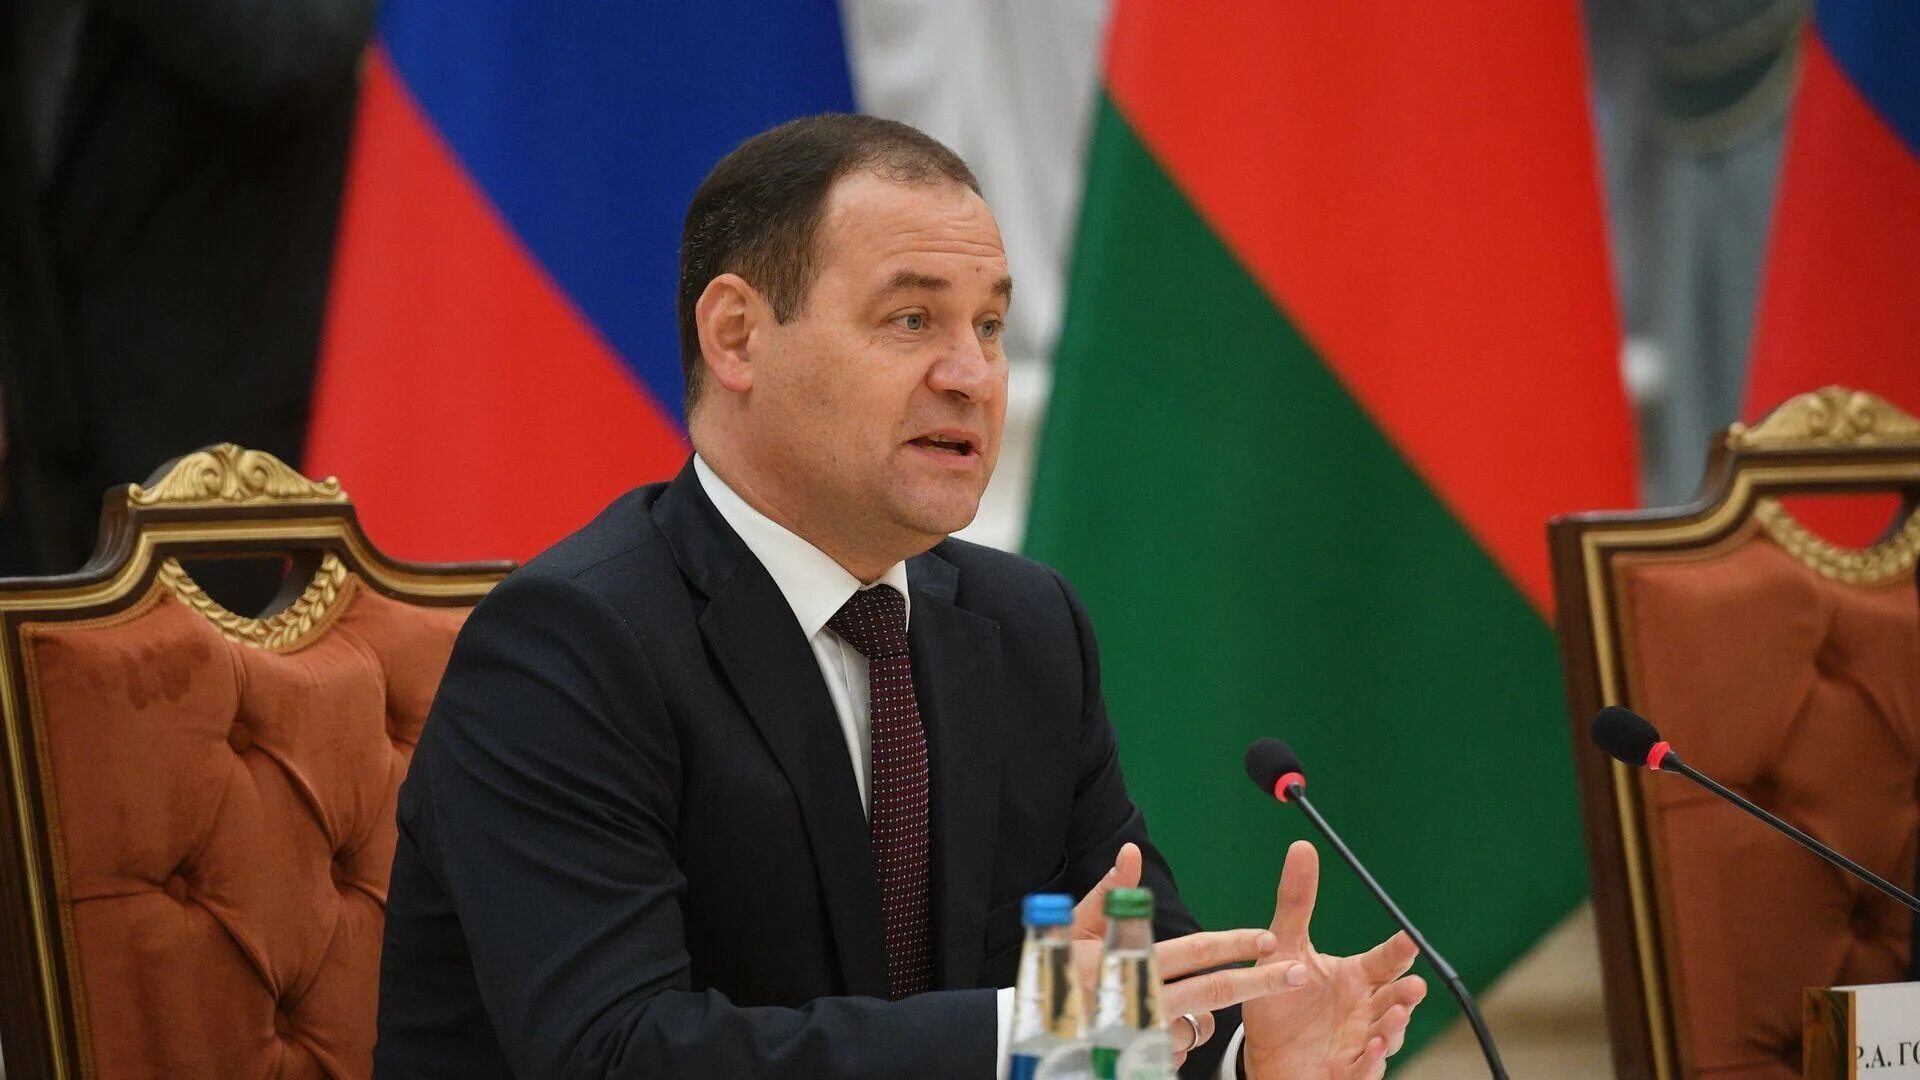 Головченко премьер министр Беларуси. Премьер министр это глава